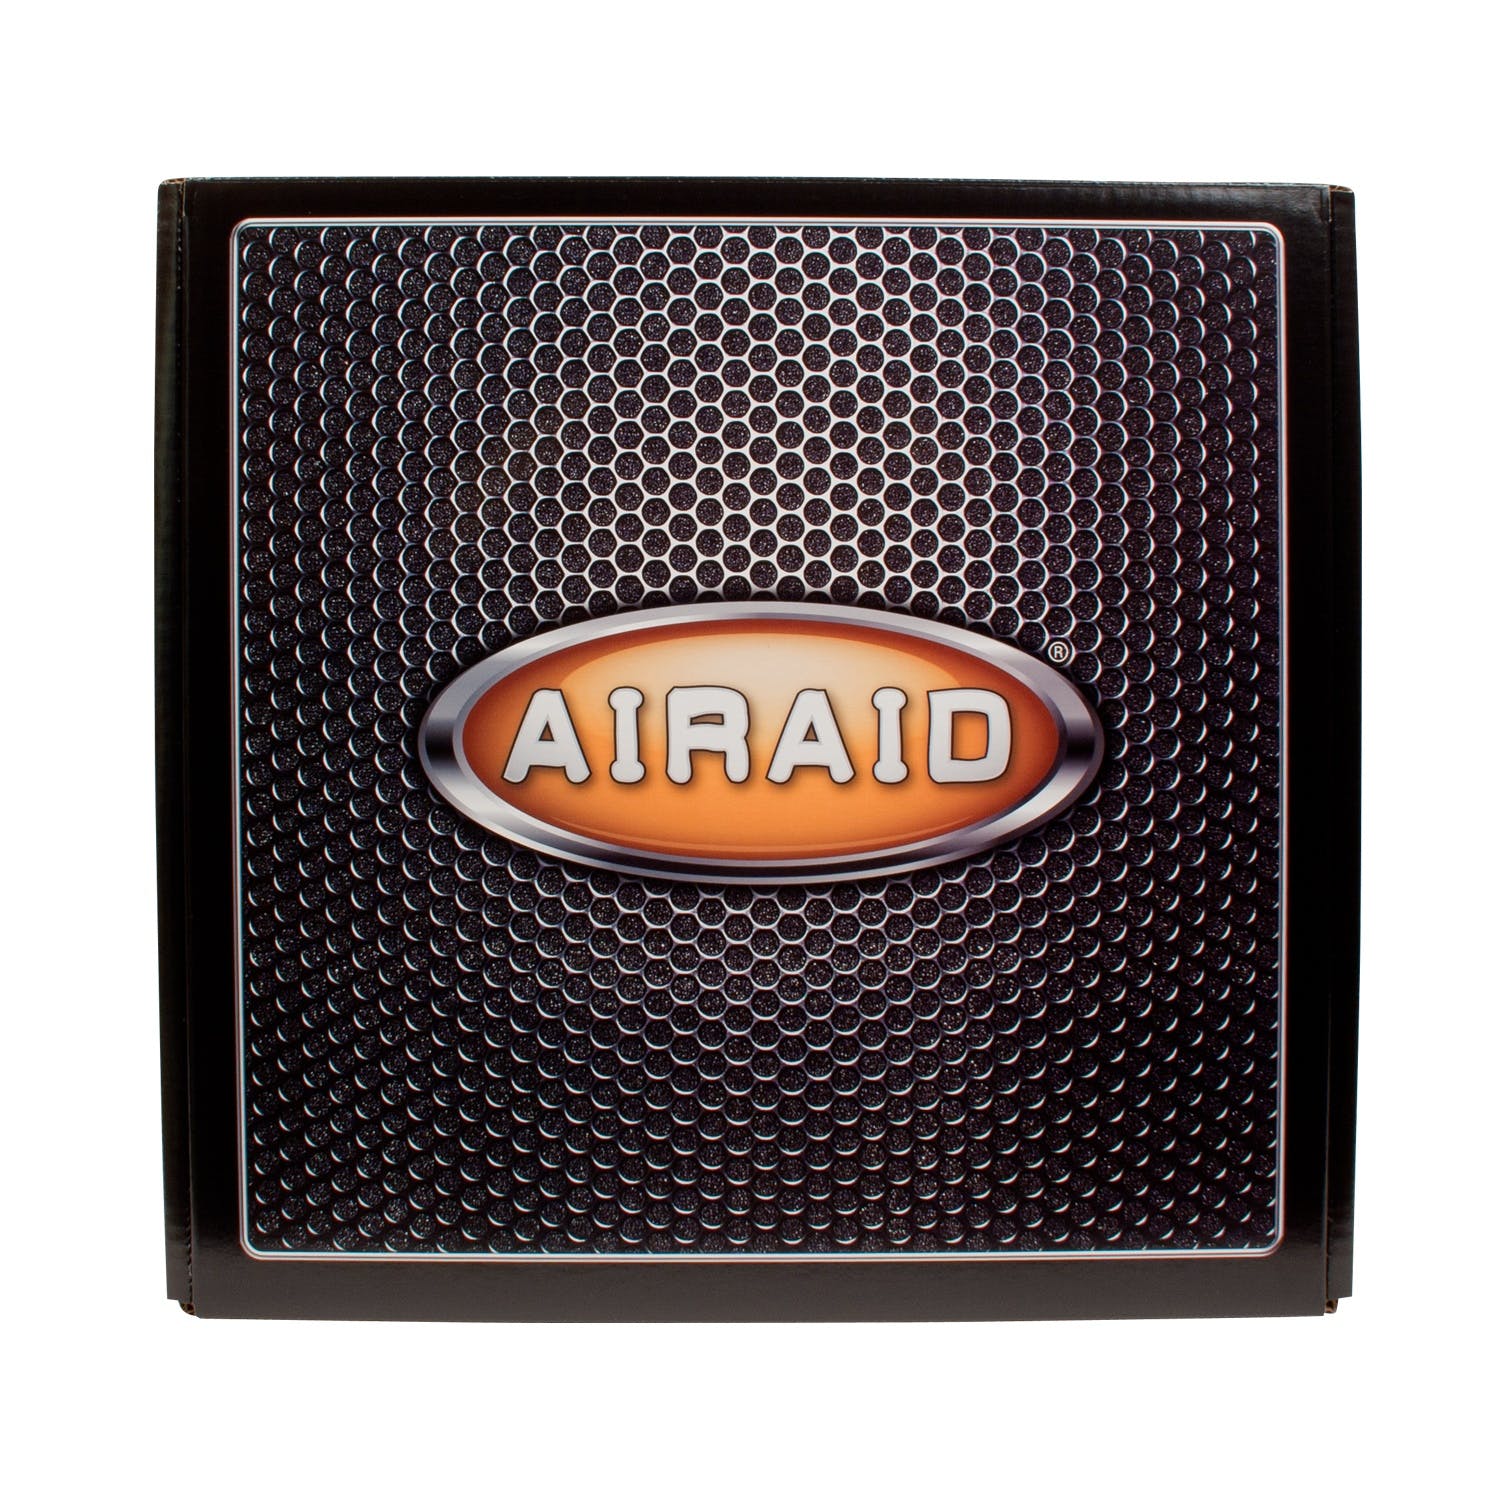 AIRAID 201-266 Performance Air Intake System